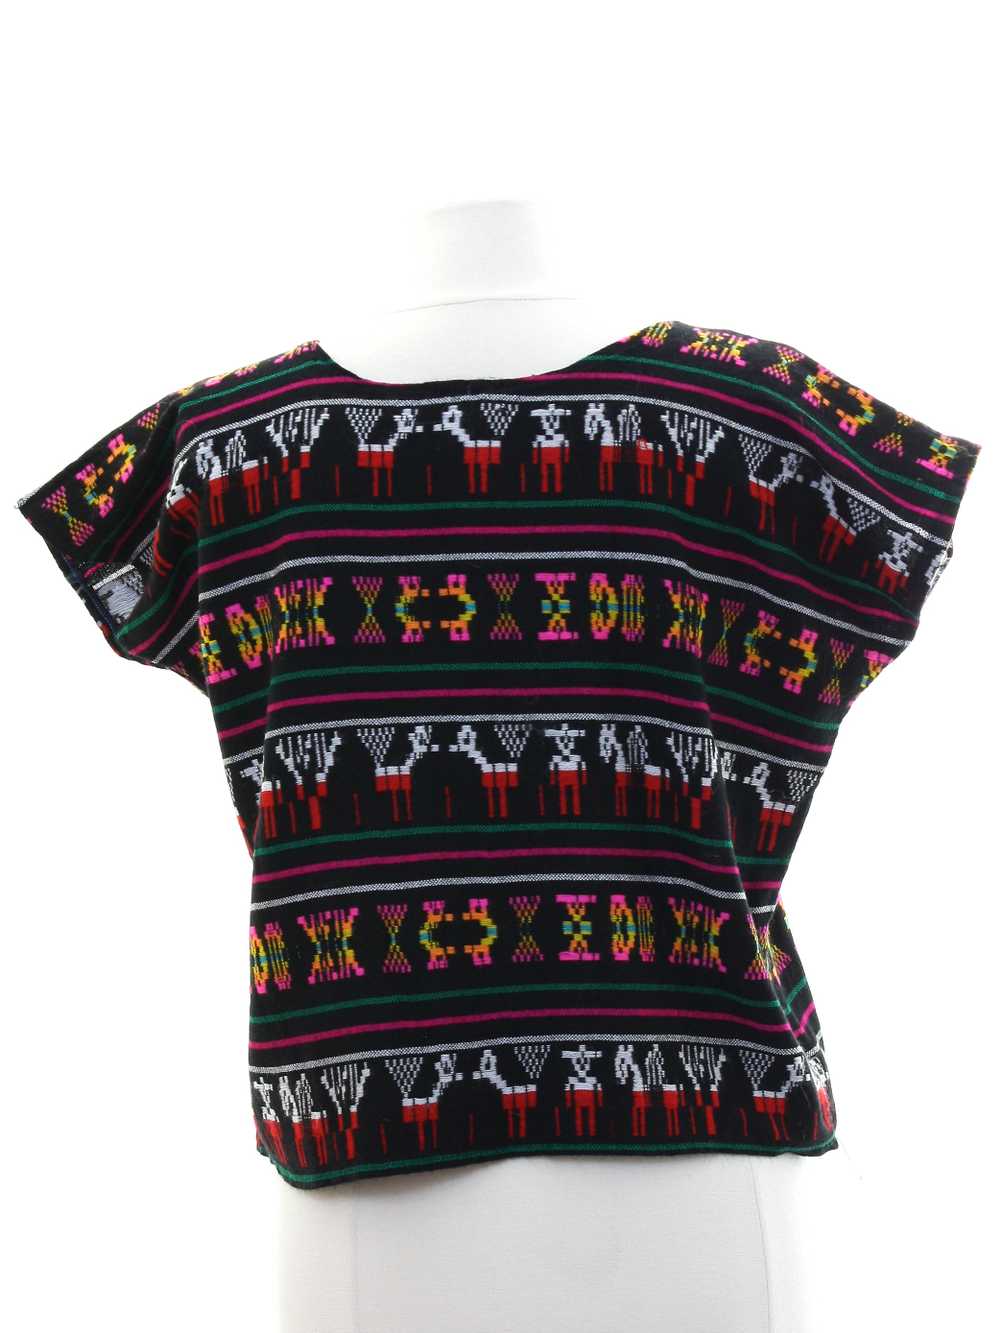 1970's Womens Guatemalan Style Shirt - image 3